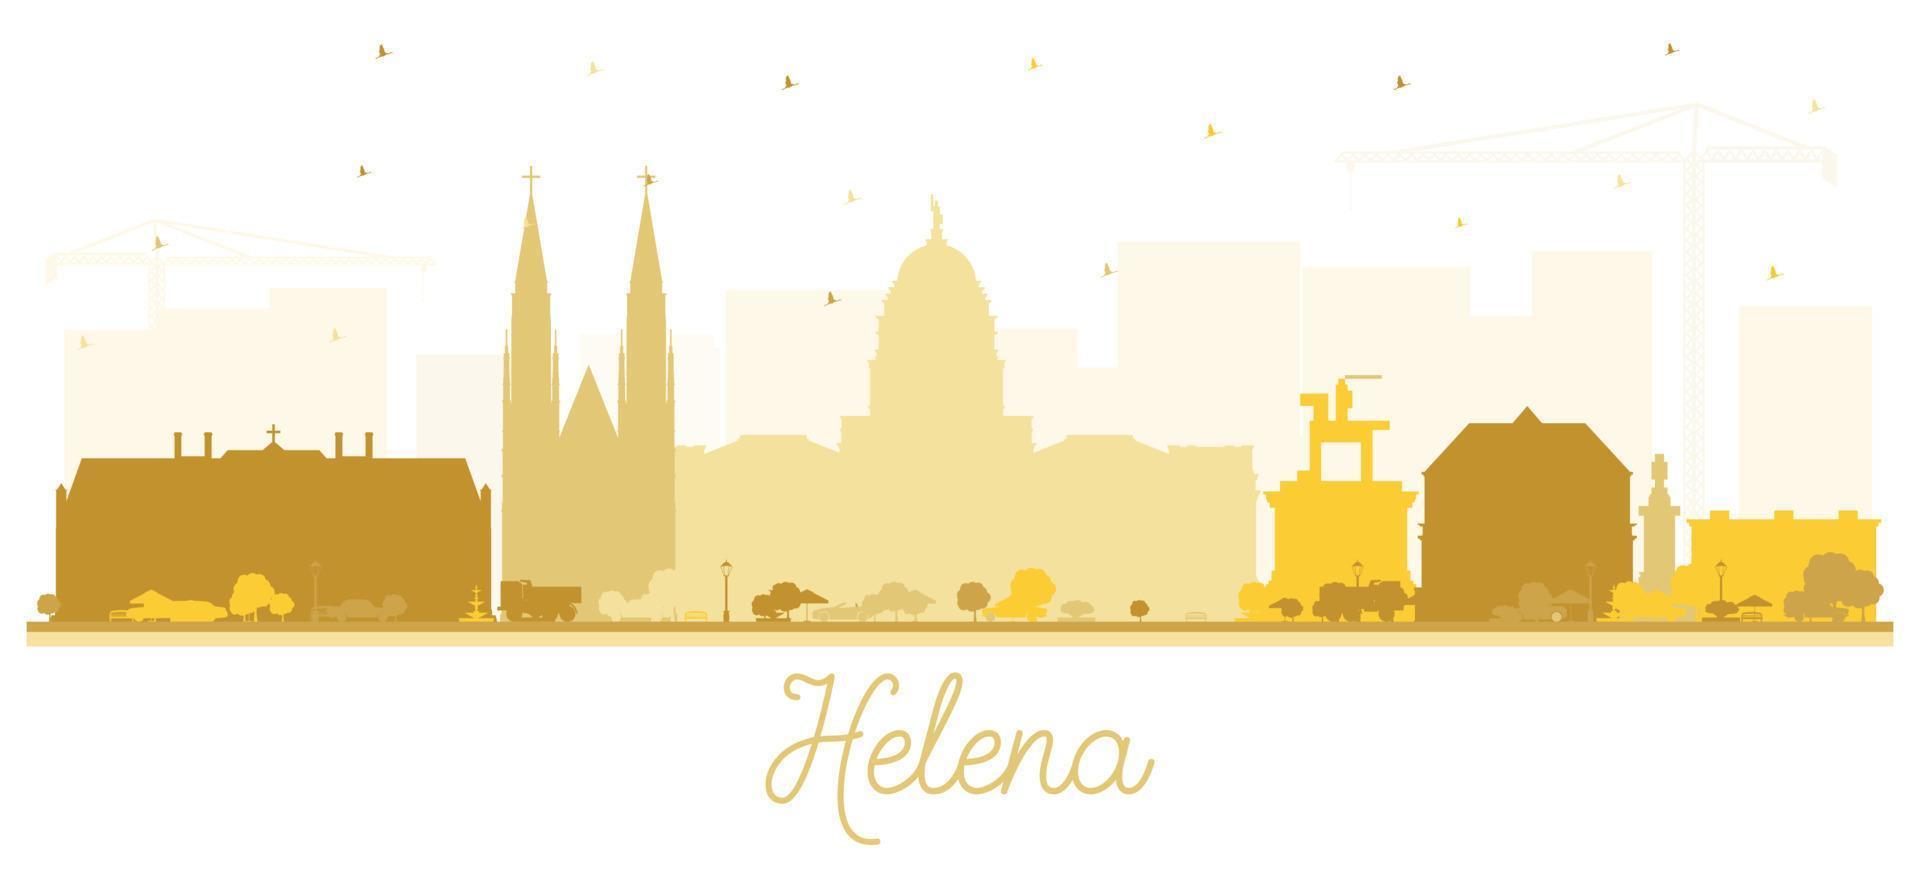 silhueta do horizonte da cidade de helena montana com edifícios dourados isolados no branco. vetor